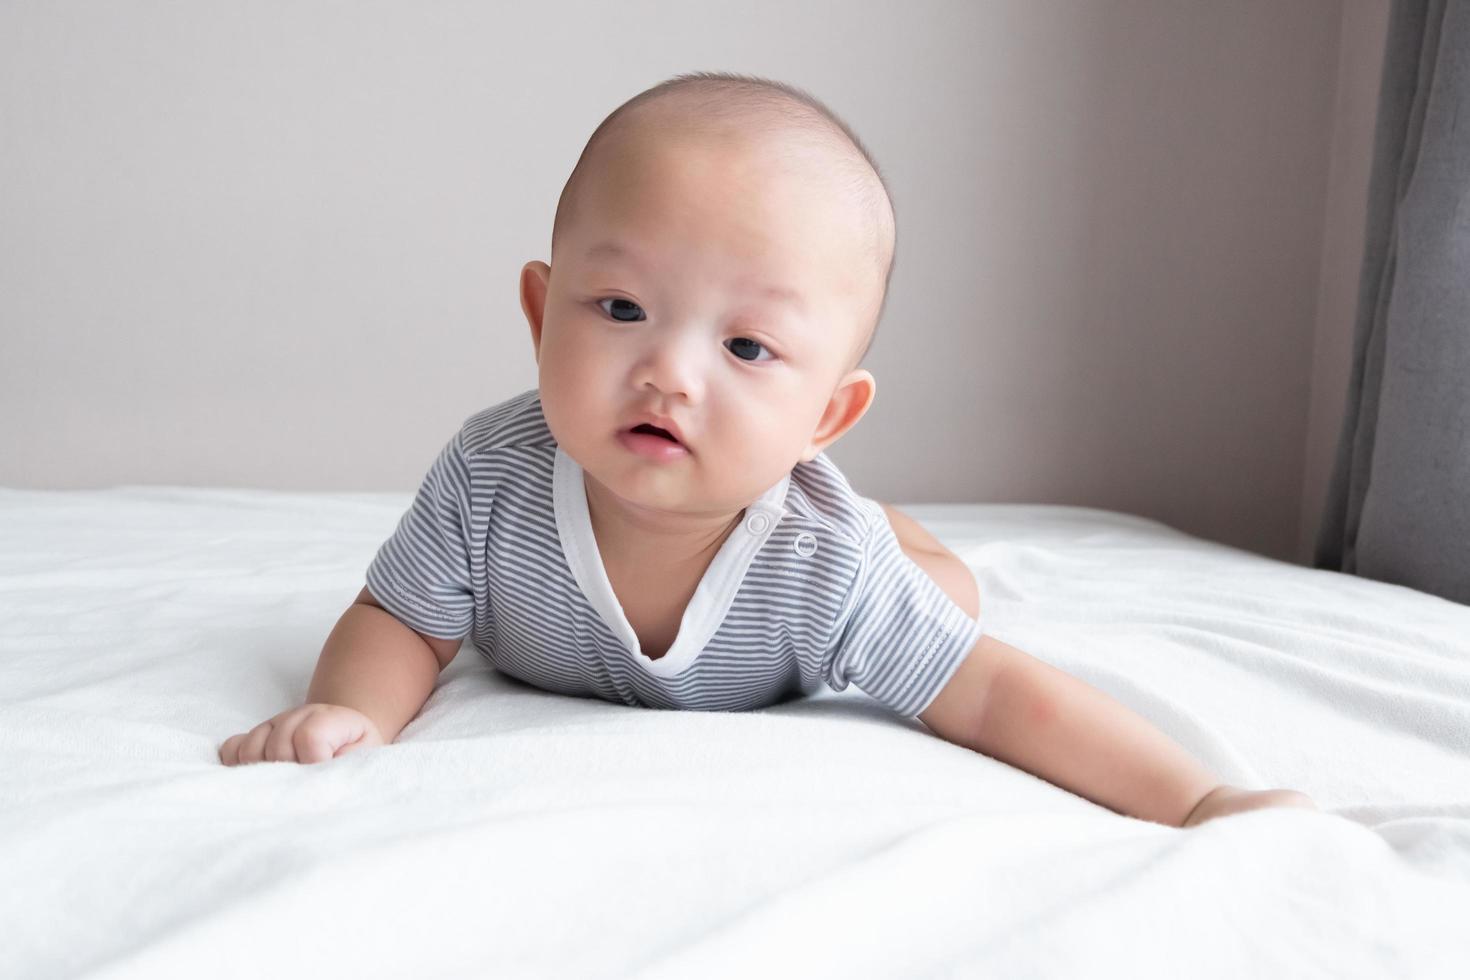 retrato de un bebé con una camisa a rayas, vista frontal, arrastrándose sobre un colchón blanco foto